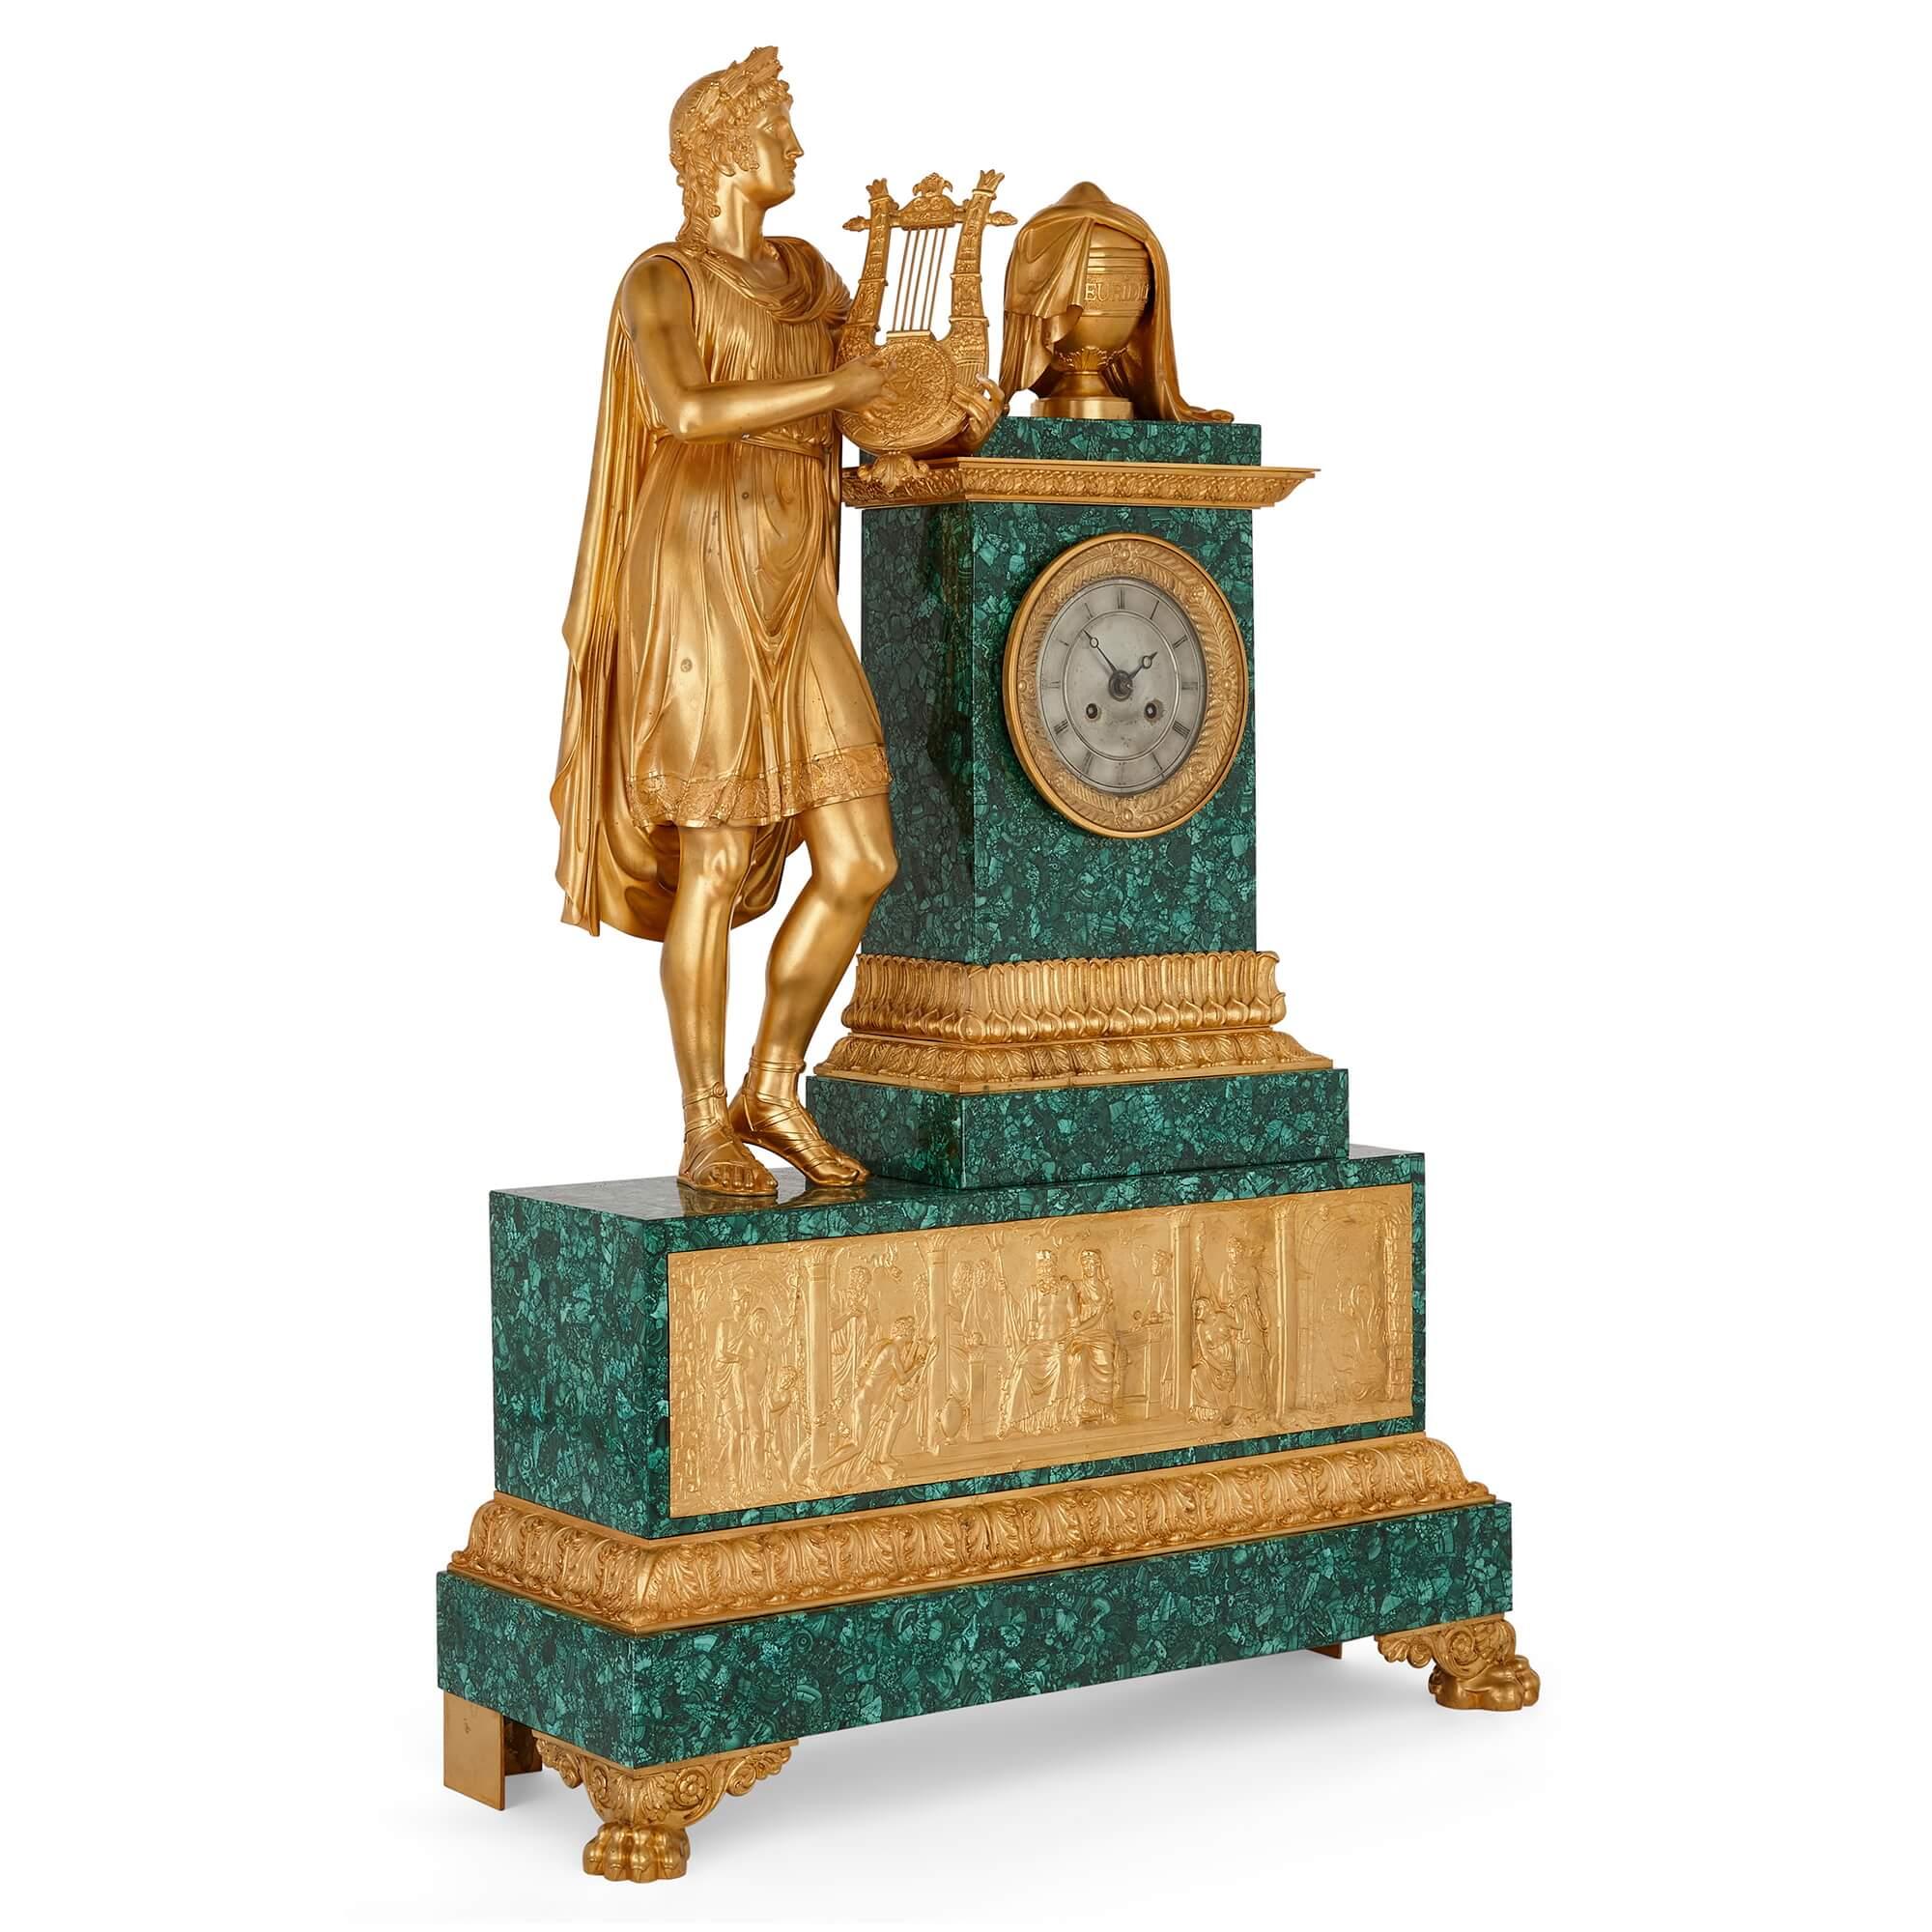 Beeindruckende skulpturale Kaminuhr aus Ormolu und Malachit aus der französischen Empirezeit
Französisch, um 1825
Höhe 92cm, Breite 63cm, Tiefe 22cm

Diese prächtige, beeindruckende und außergewöhnlich schöne antike Uhr von Jacquier aus Paris (ca.